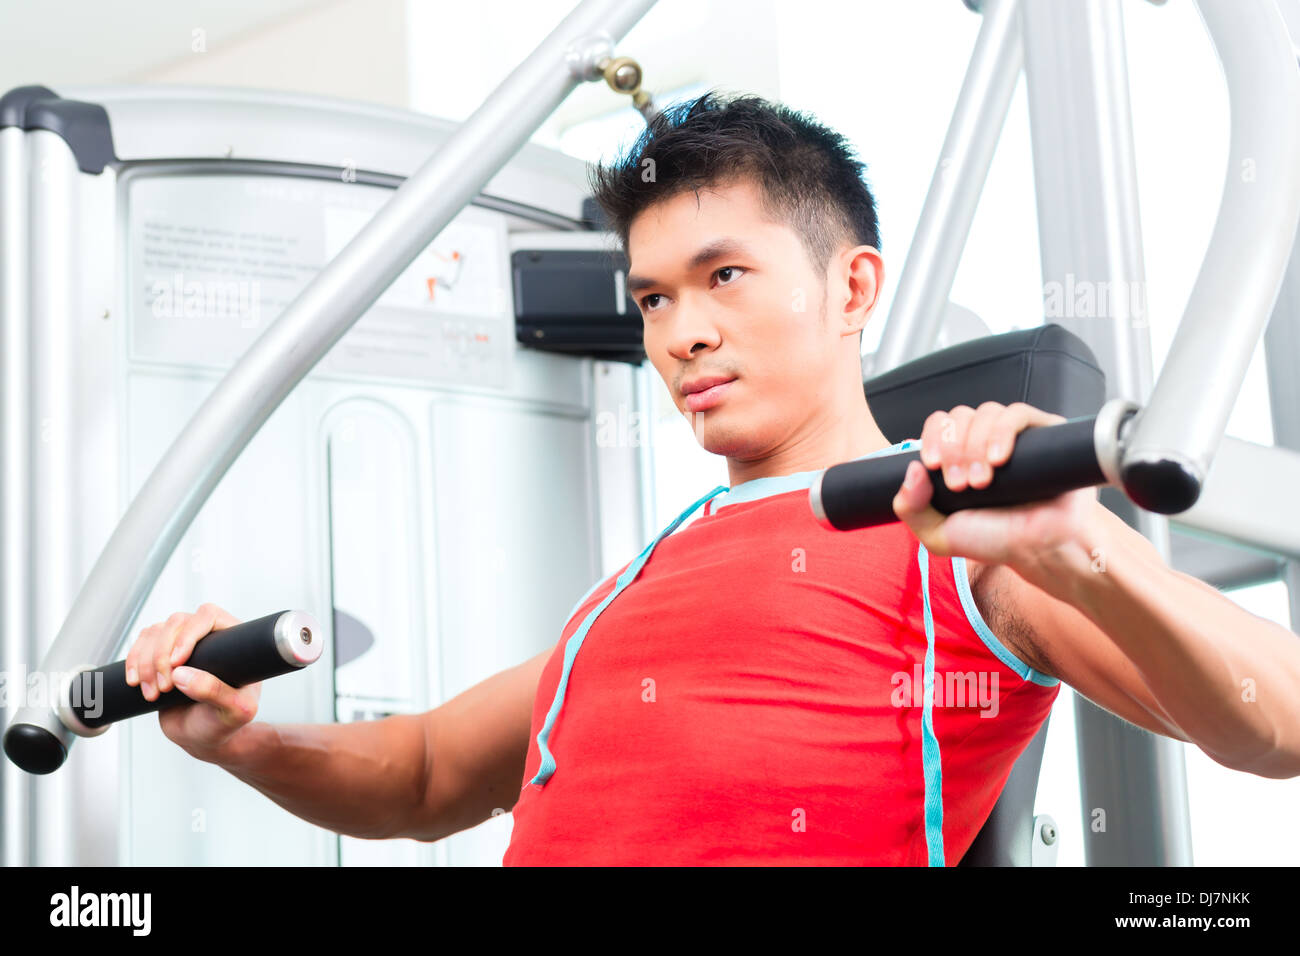 Asian uomo cinese avente fitness training o allenamento in palestra facendo sport per costruire muscolo su una macchina di peso Foto Stock